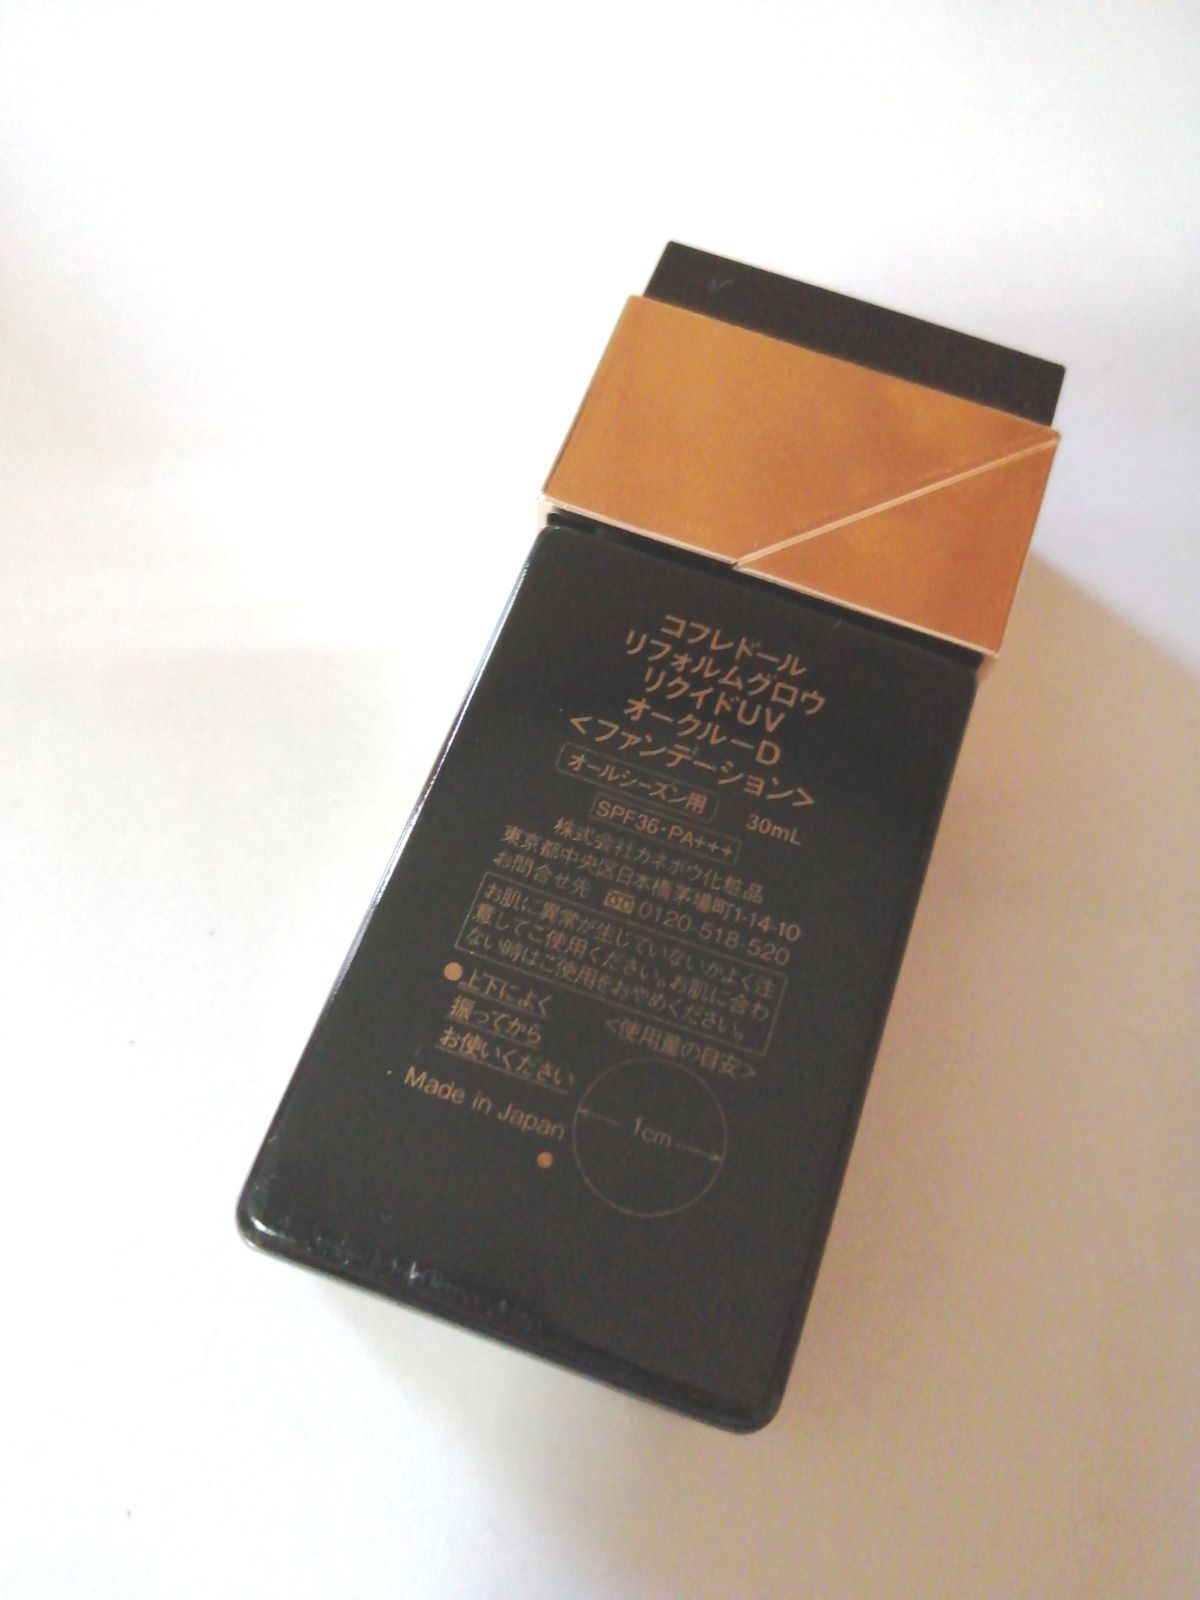 カネボウ化粧品【3箱セット】コフレドール リフォルムグロウ リクイドUV オークル-C